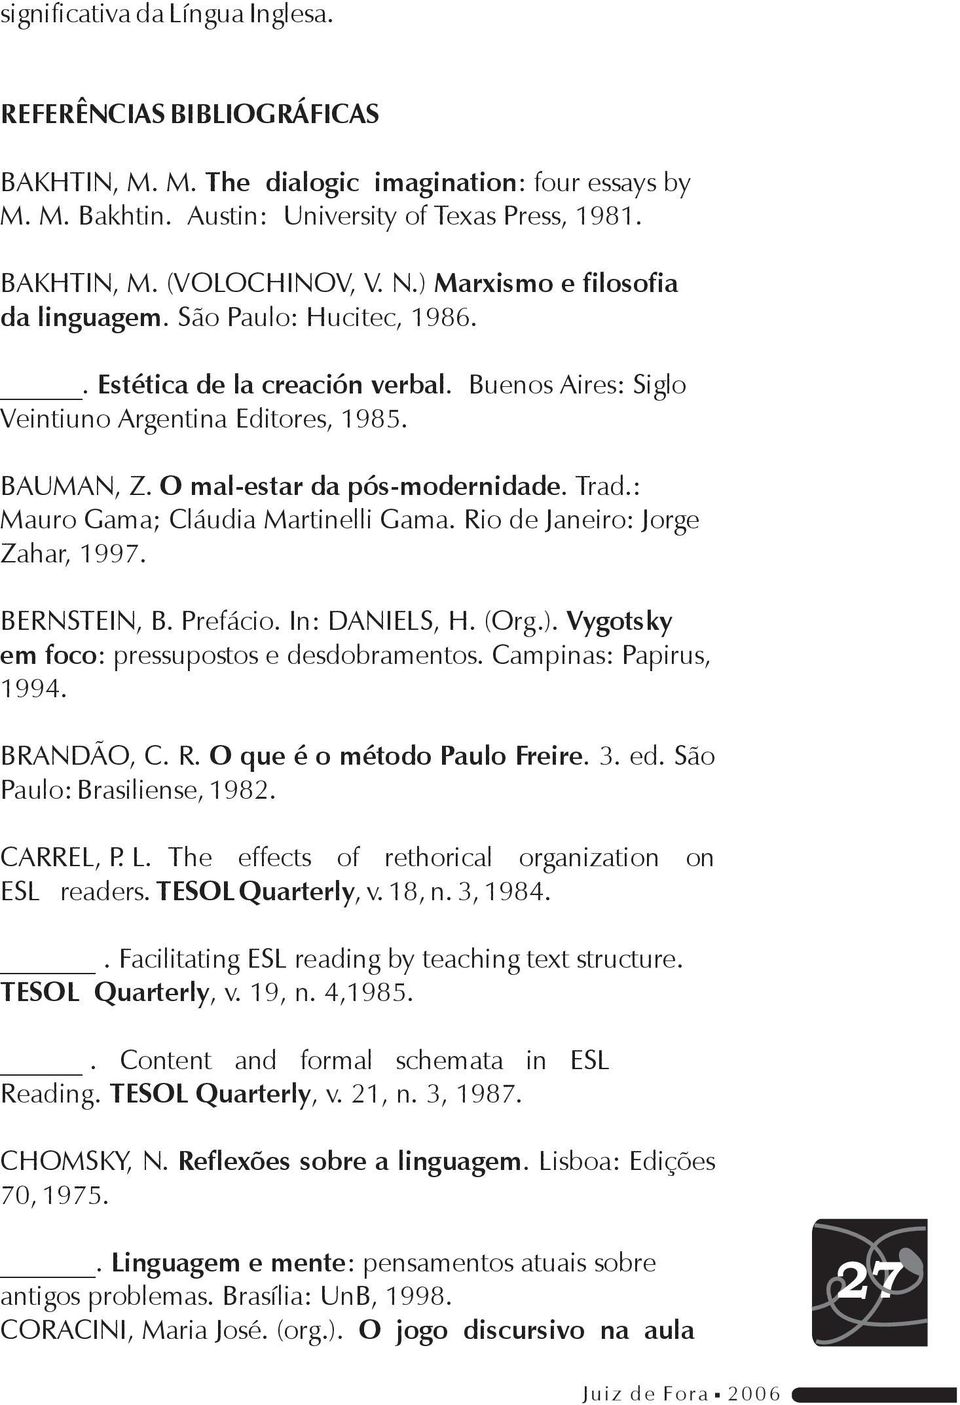 Trad.: Mauro Gama; Cláudia Martinelli Gama. Rio de Janeiro: Jorge Zahar, 1997. BERNSTEIN, B. Prefácio. In: DANIELS, H. (Org.). Vygotsky em foco: pressupostos e desdobramentos. Campinas: Papirus, 1994.